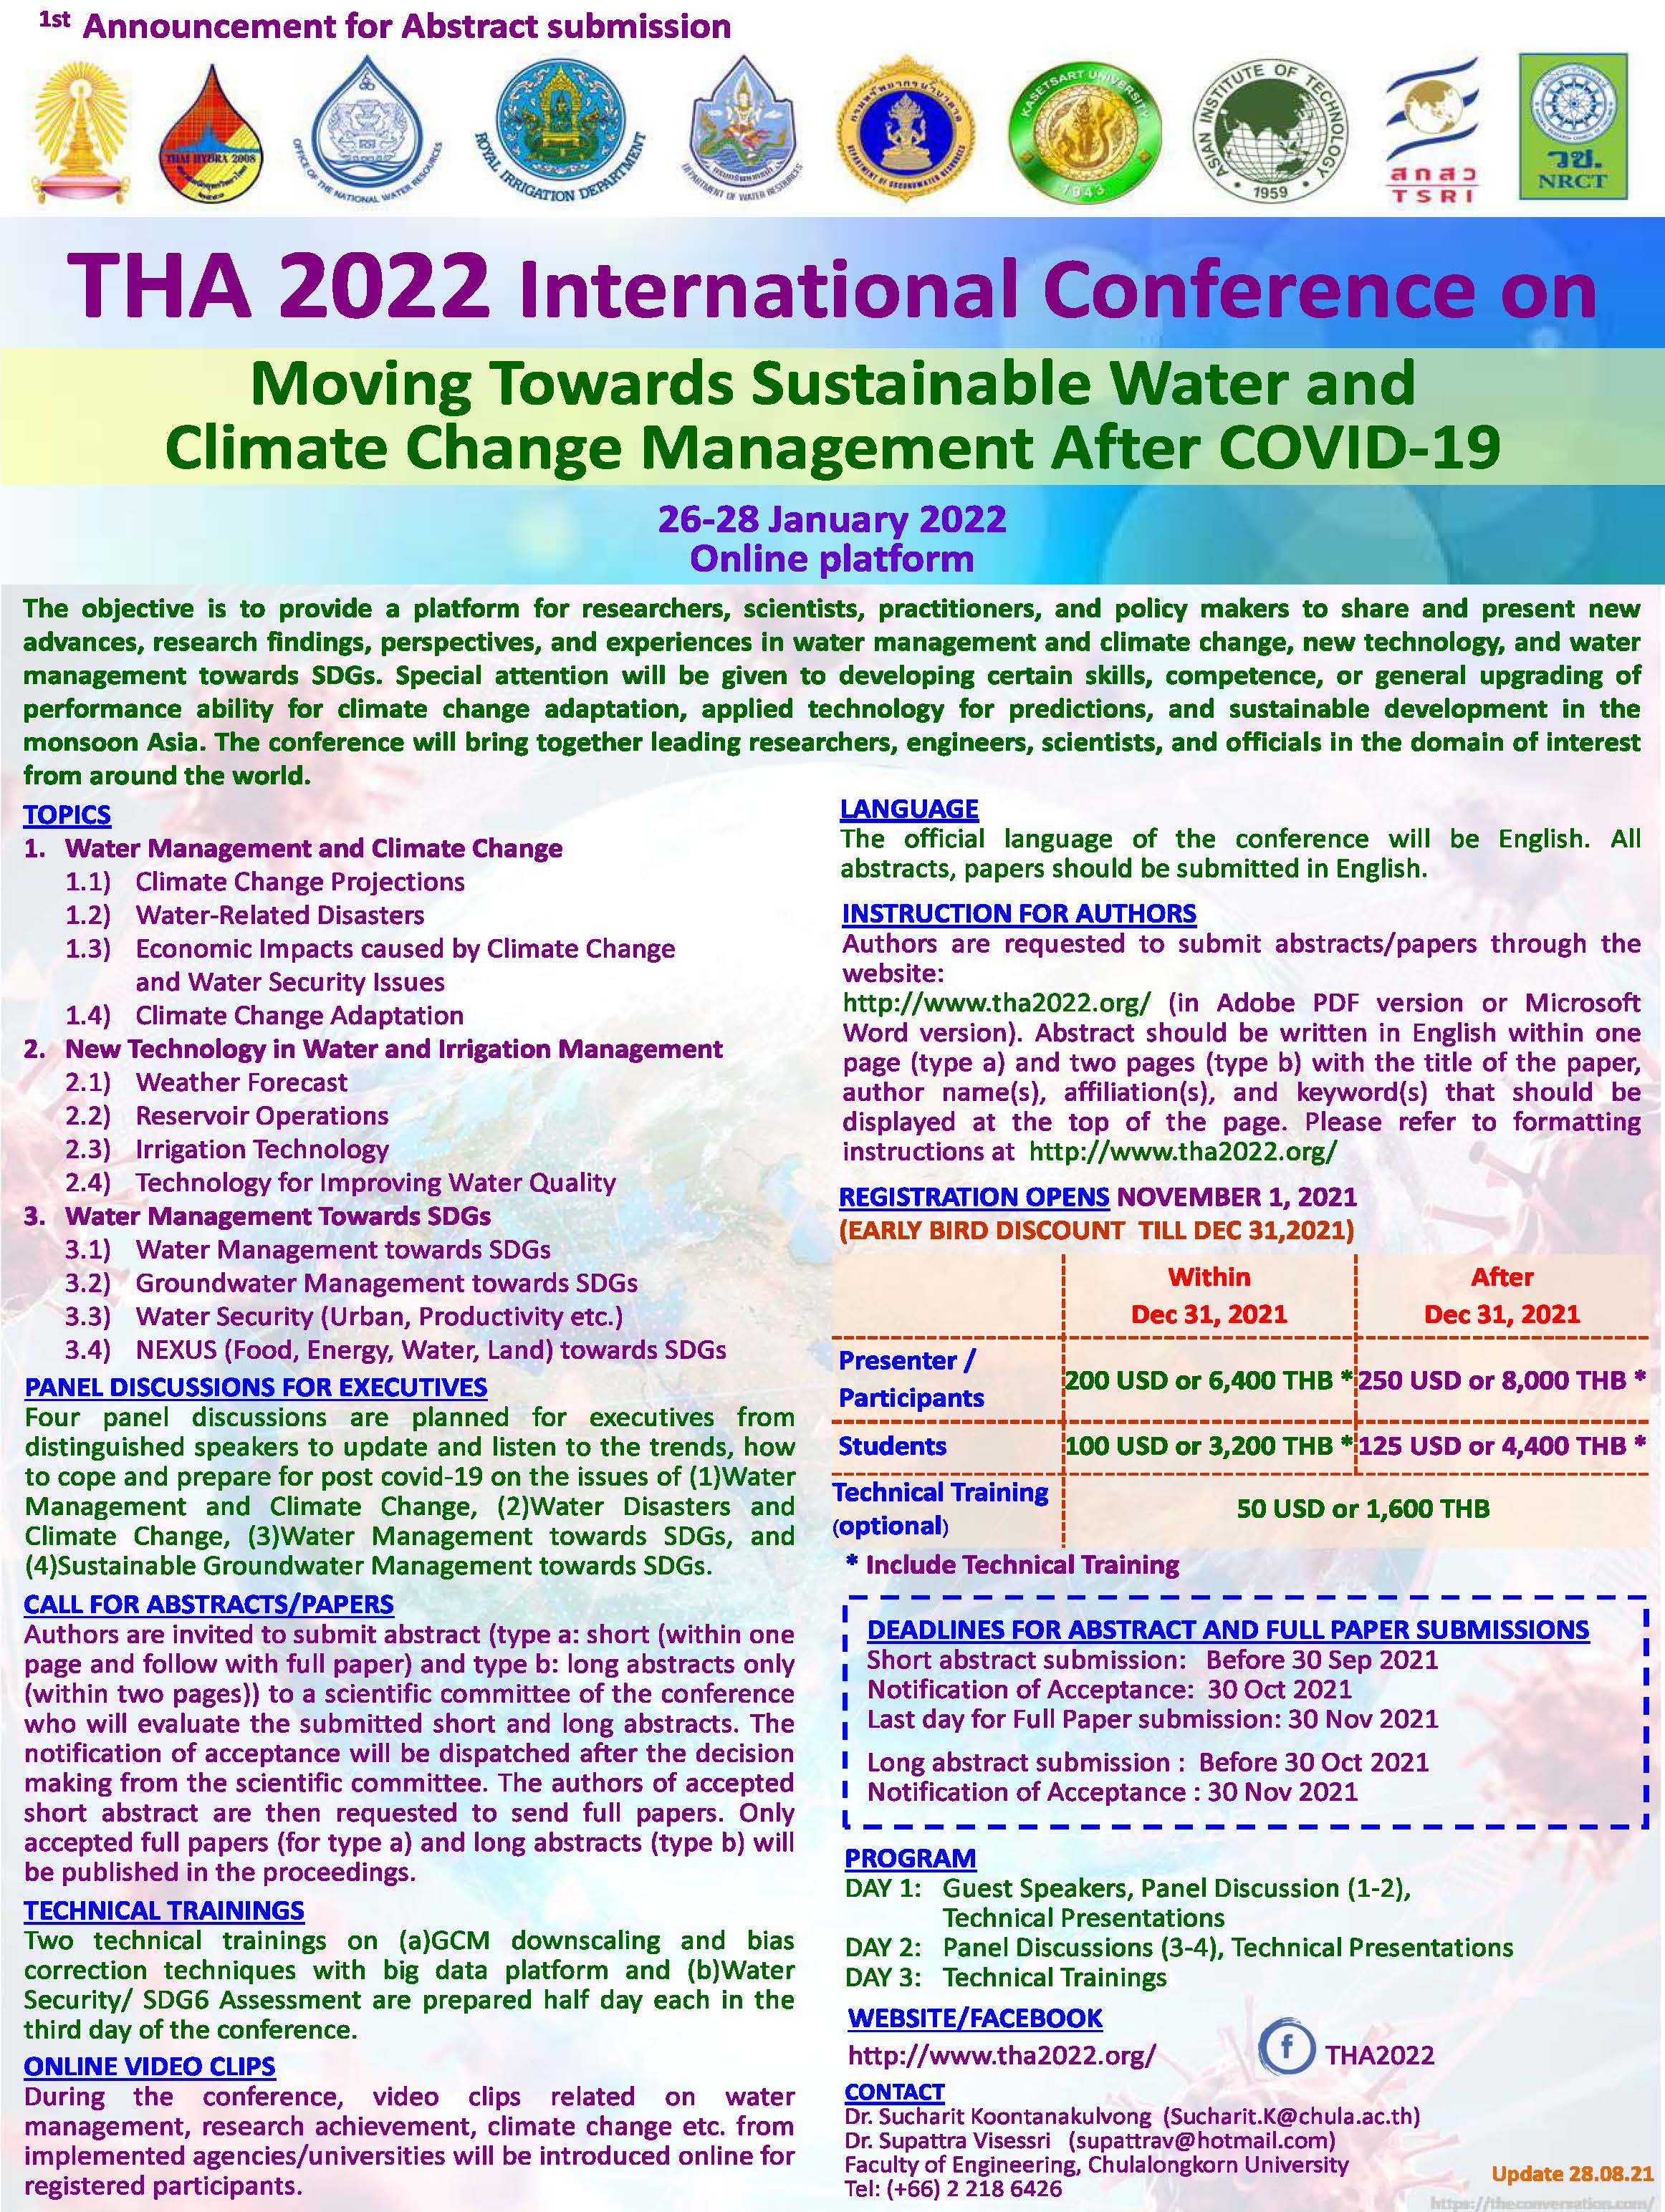 จุฬาลงกรณ์มหาวิทยาลัย ร่วมมือกับสมาคมนักอุทกวิทยาไทย กำหนดจัดการประชุมนานาชาติ THA2022 